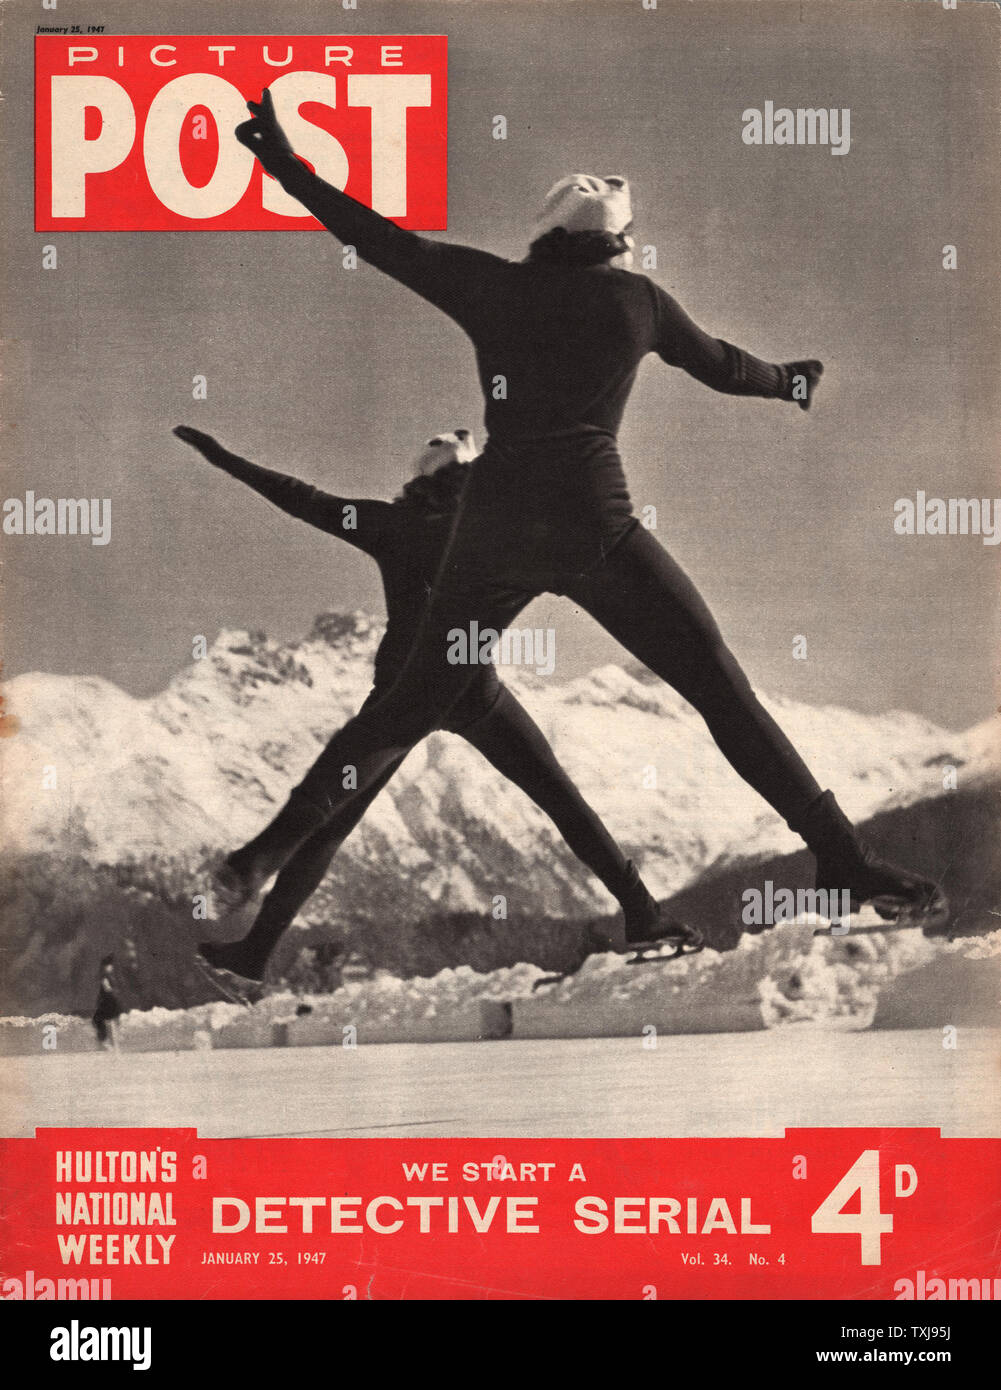 1947 Photo Post magazine front page montrant deux dames patinage sur glace Banque D'Images